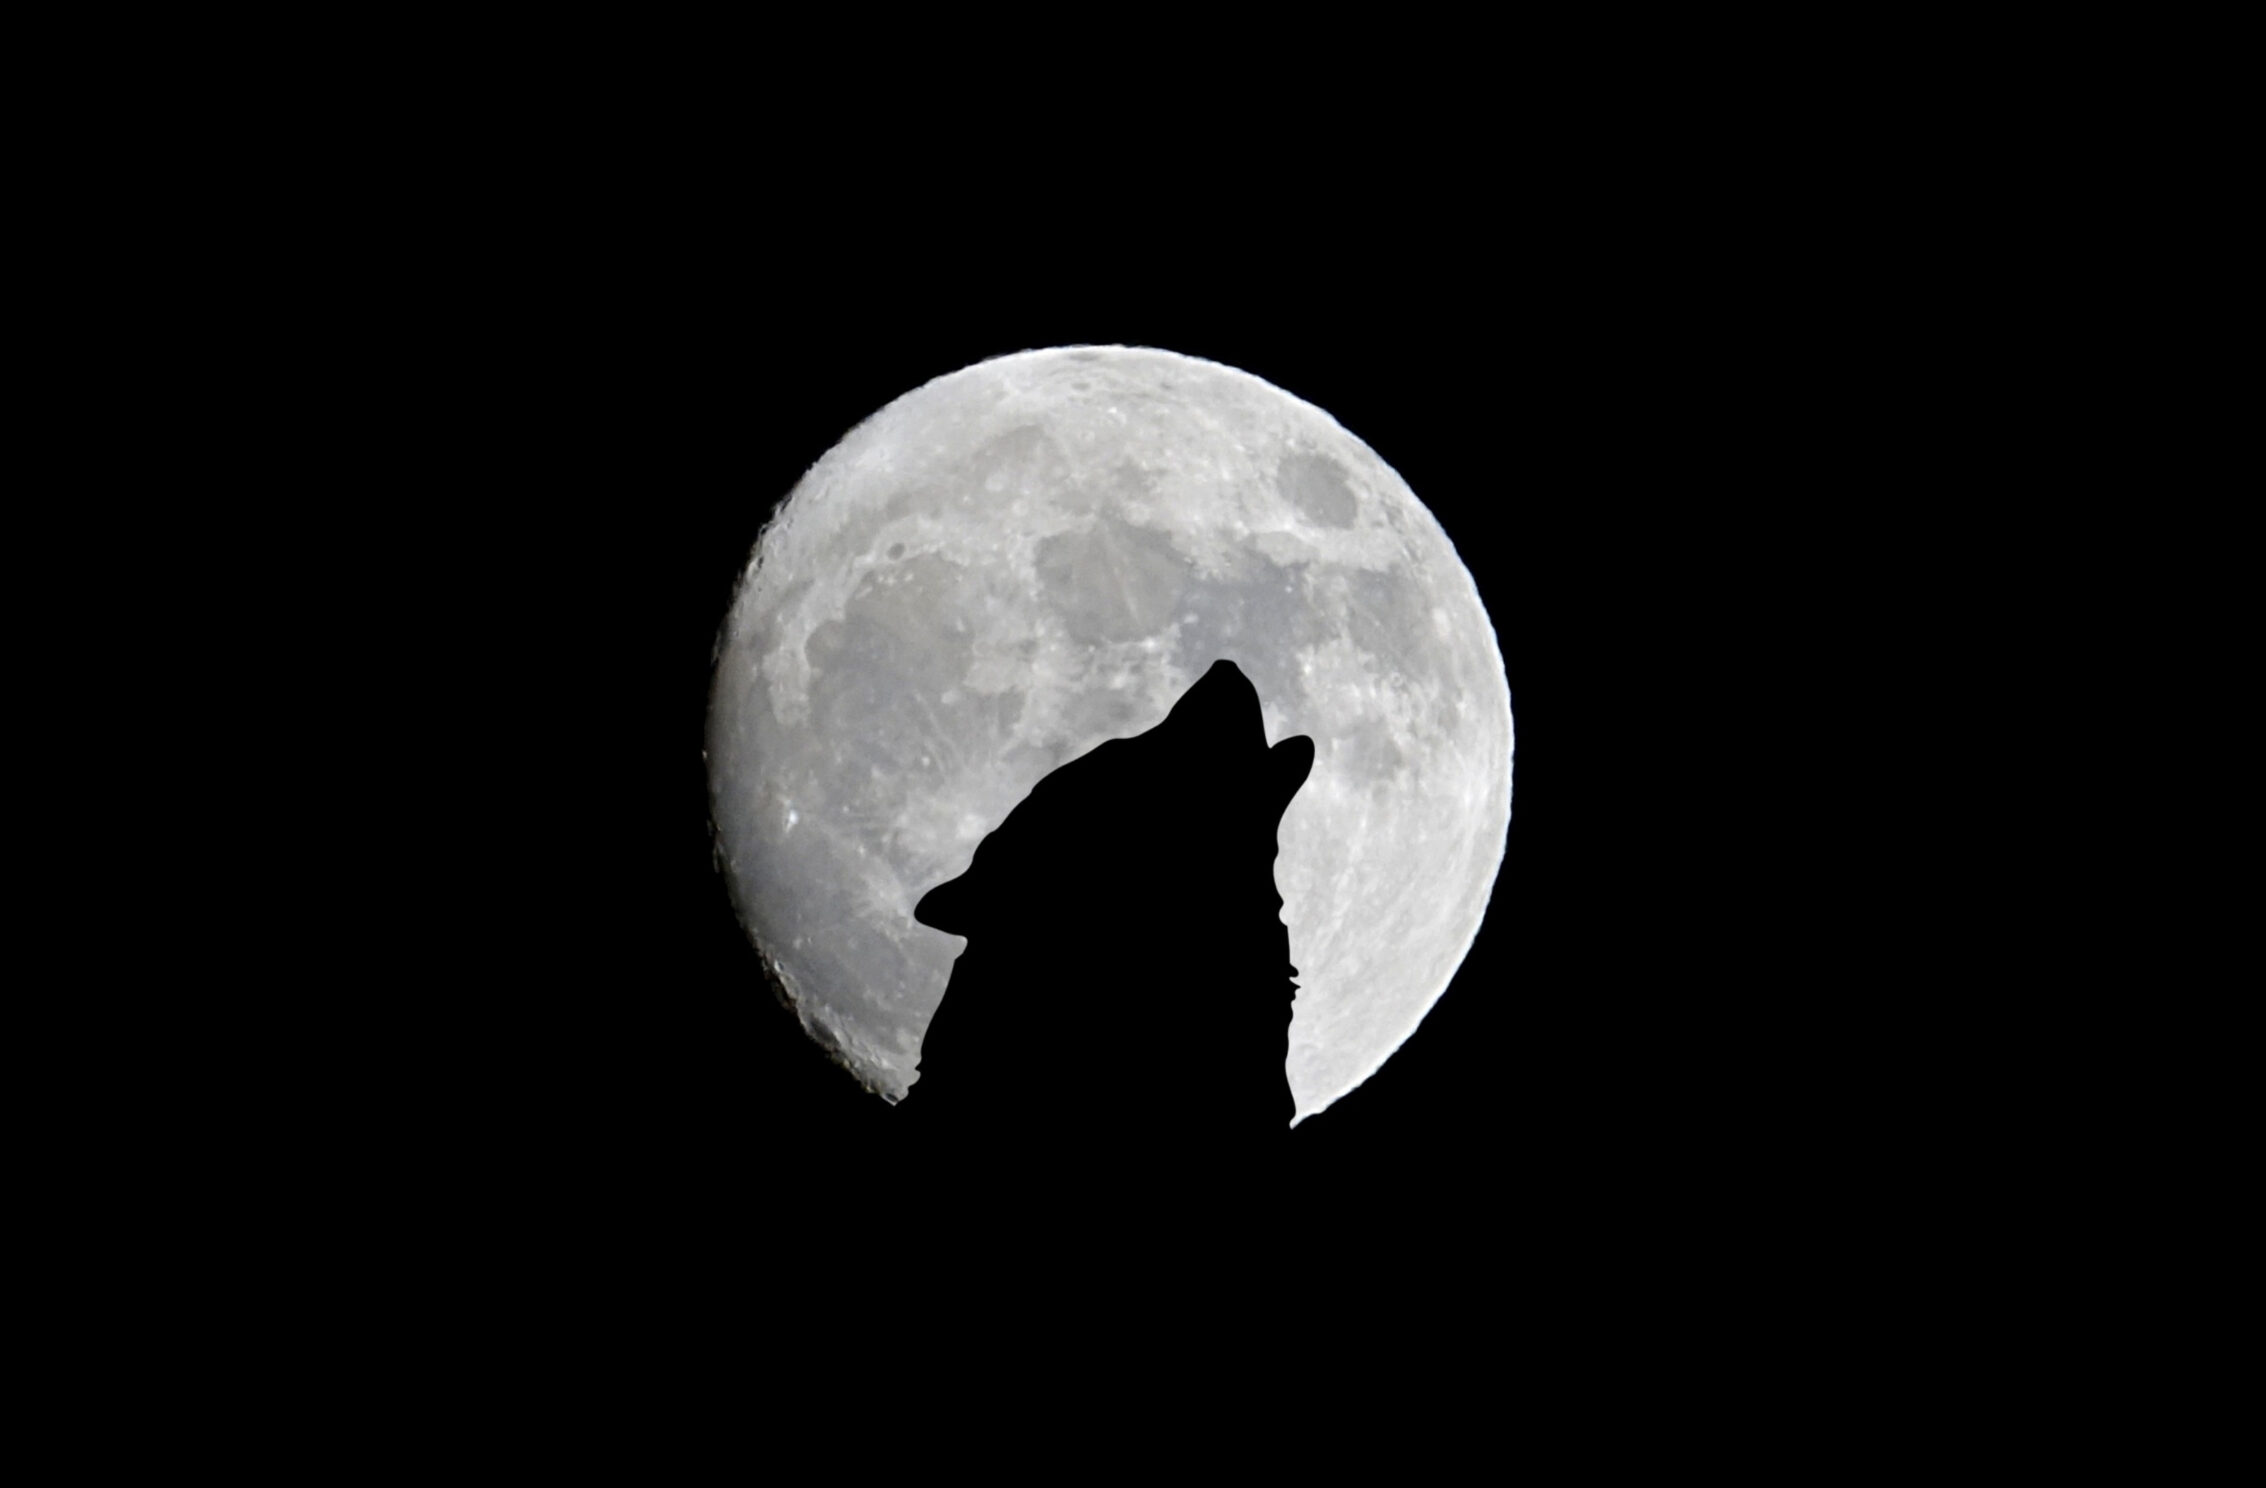 2266x1488 wallpaper Silhouette of Wolf Full Moon Night Darkness iPad Wallpaper 2266x1488 pixels resolution